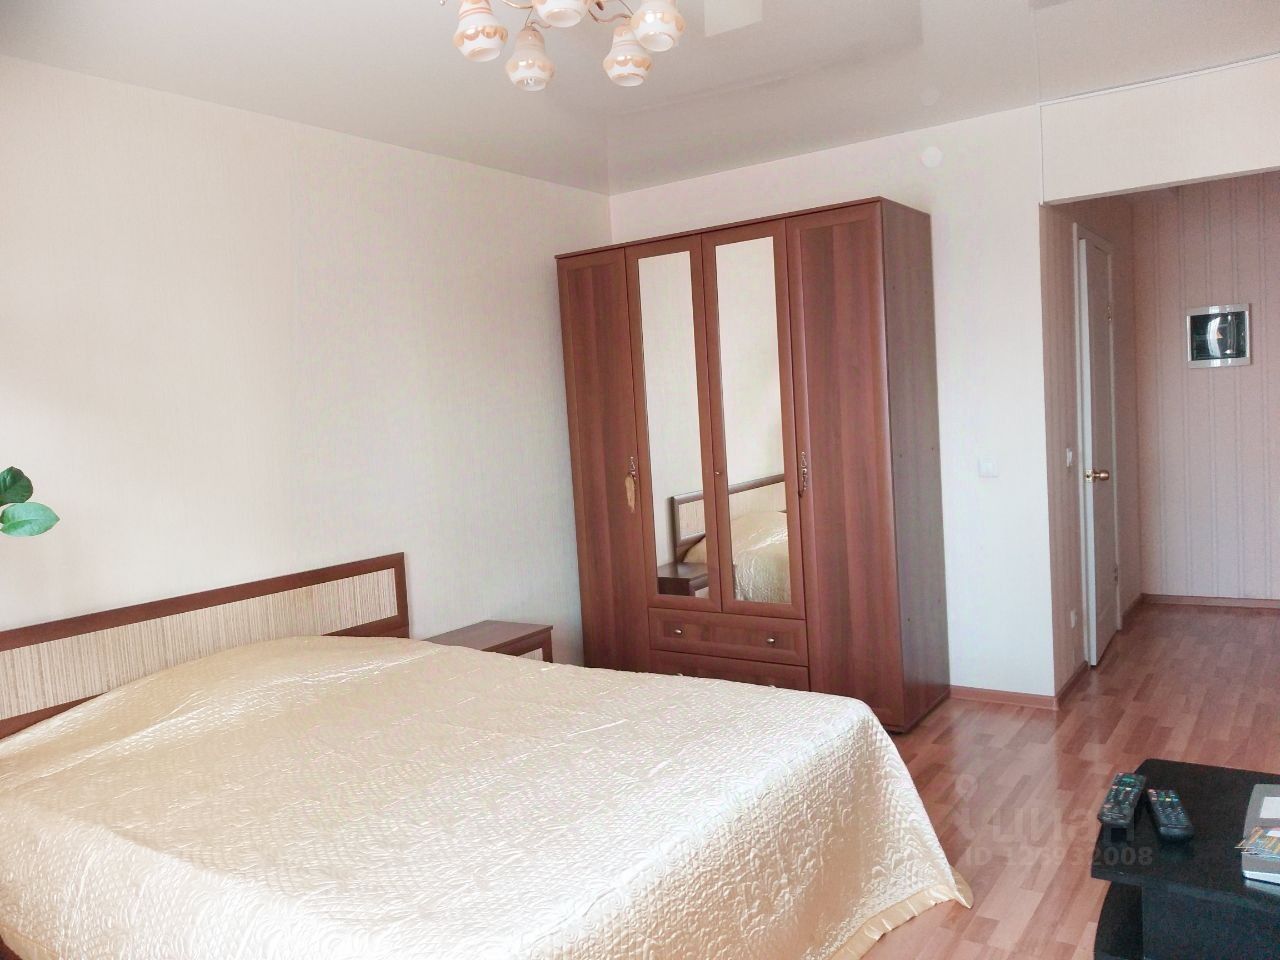 Уютная квартира в Екатеринбурге, 40 кв.м, 9 этаж, 1 комната, современная мебель, светлая спальня, посуточная аренда.